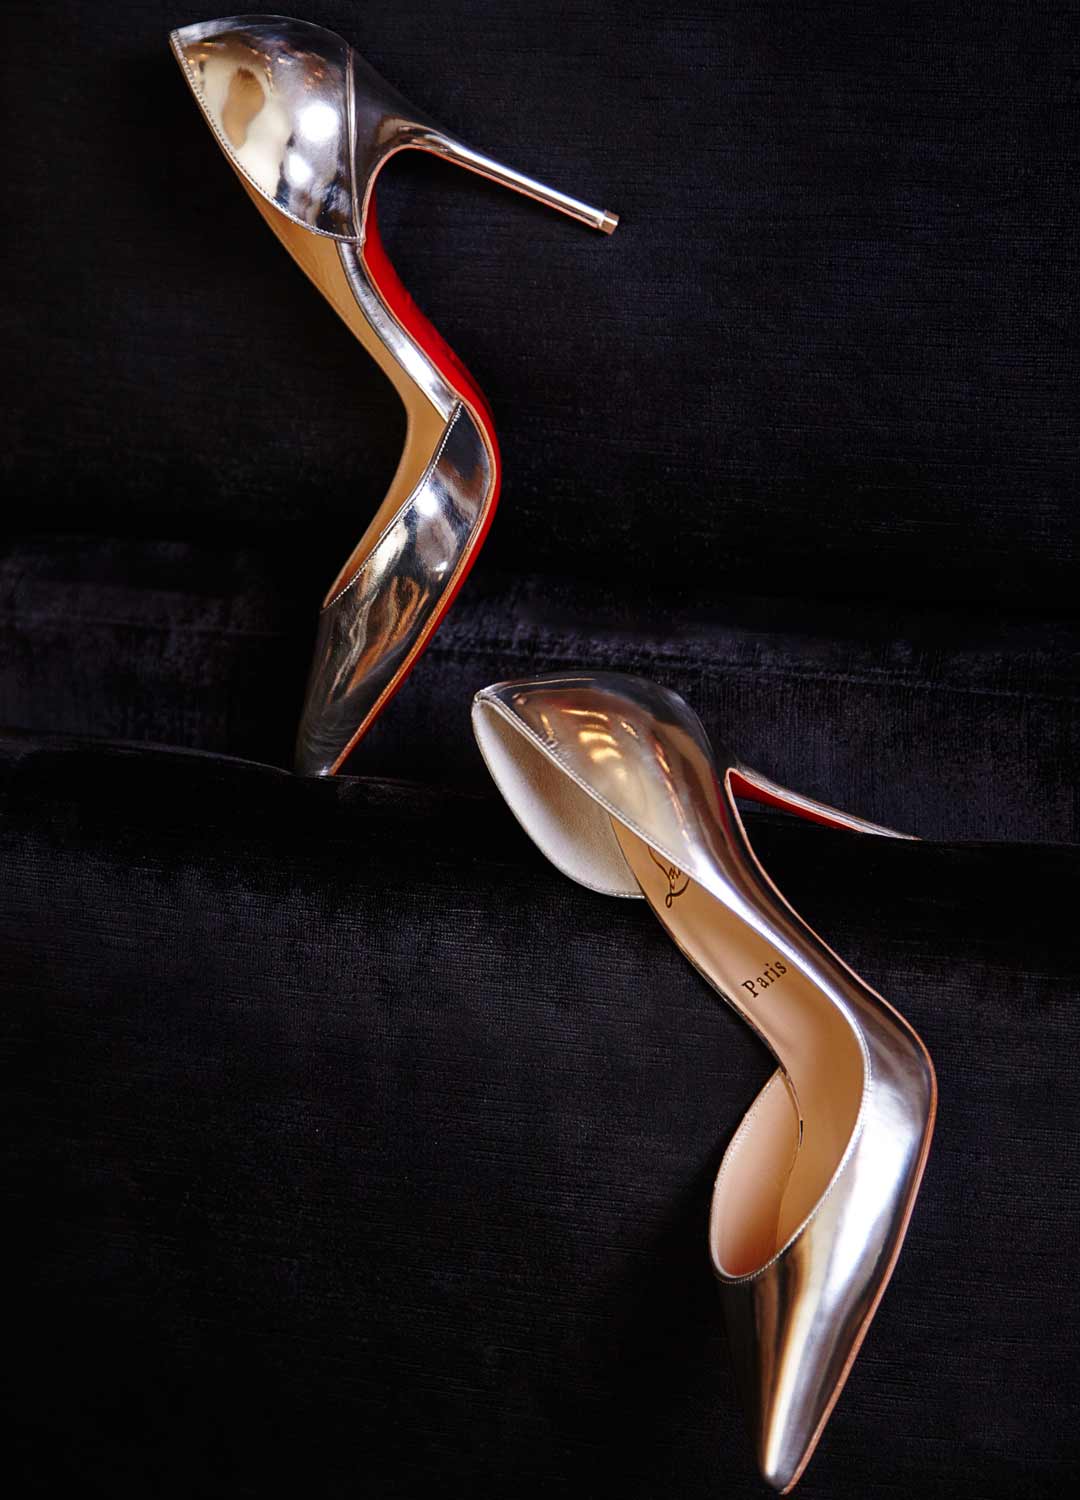 Christian Louboutin 红底鞋全攻略 高跟评价,细高跟,高跟鞋,美腿,美女,街拍,明星,时尚 高跟评价